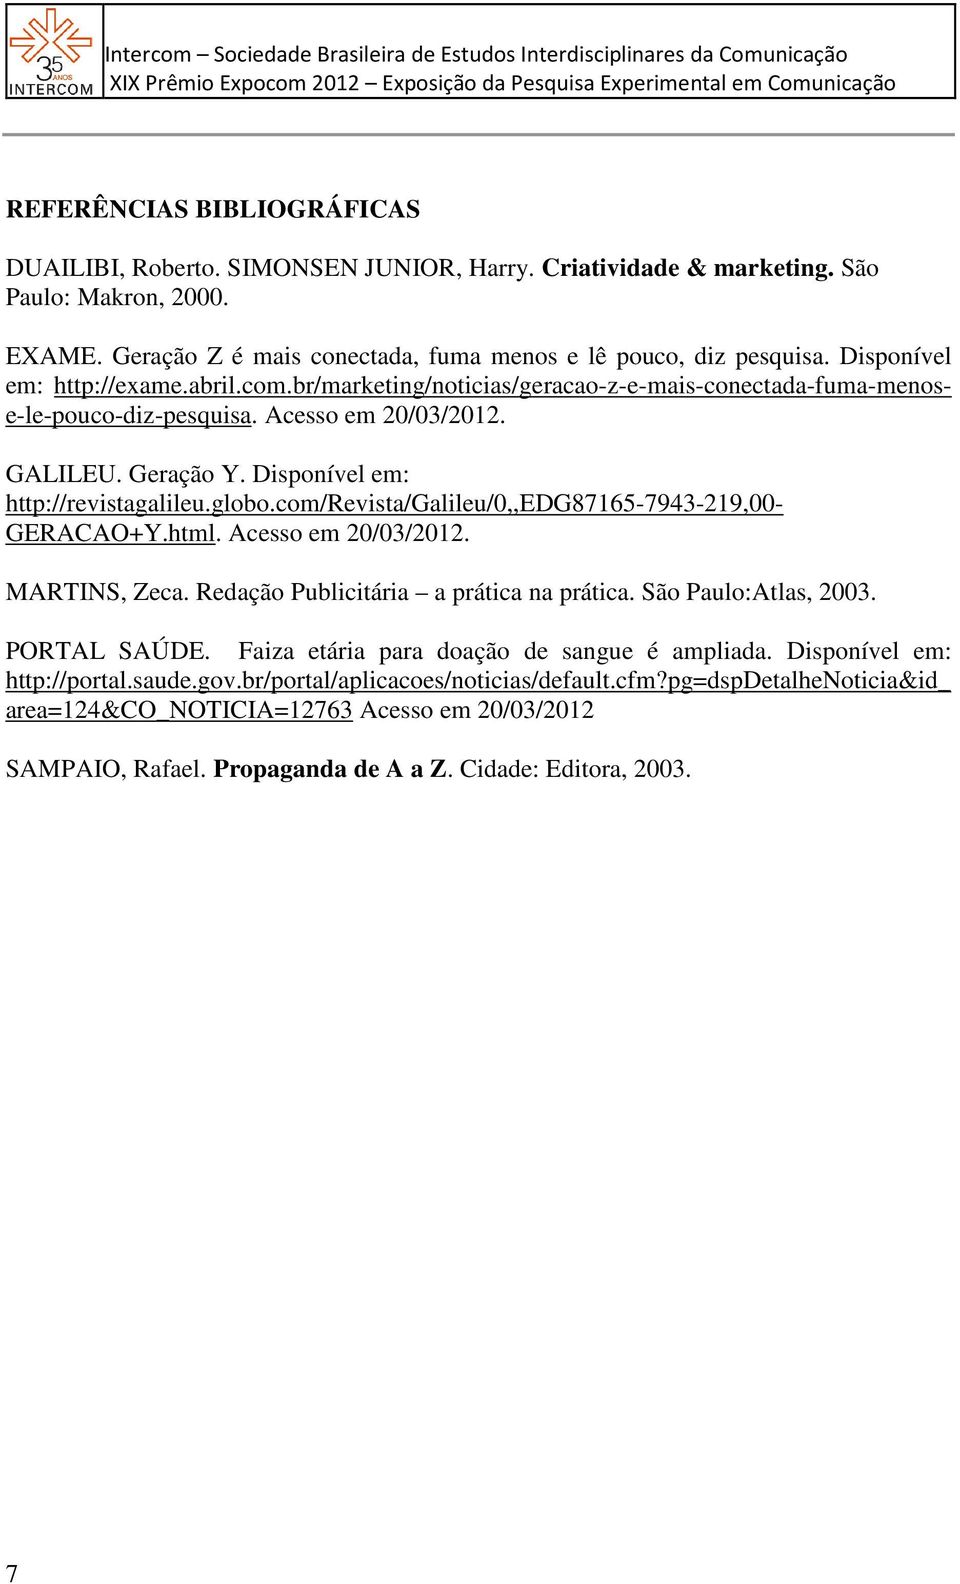 Disponível em: http://revistagalileu.globo.com/revista/galileu/0,,edg87165-7943-219,00- GERACAO+Y.html. Acesso em 20/03/2012. MARTINS, Zeca. Redação Publicitária a prática na prática.